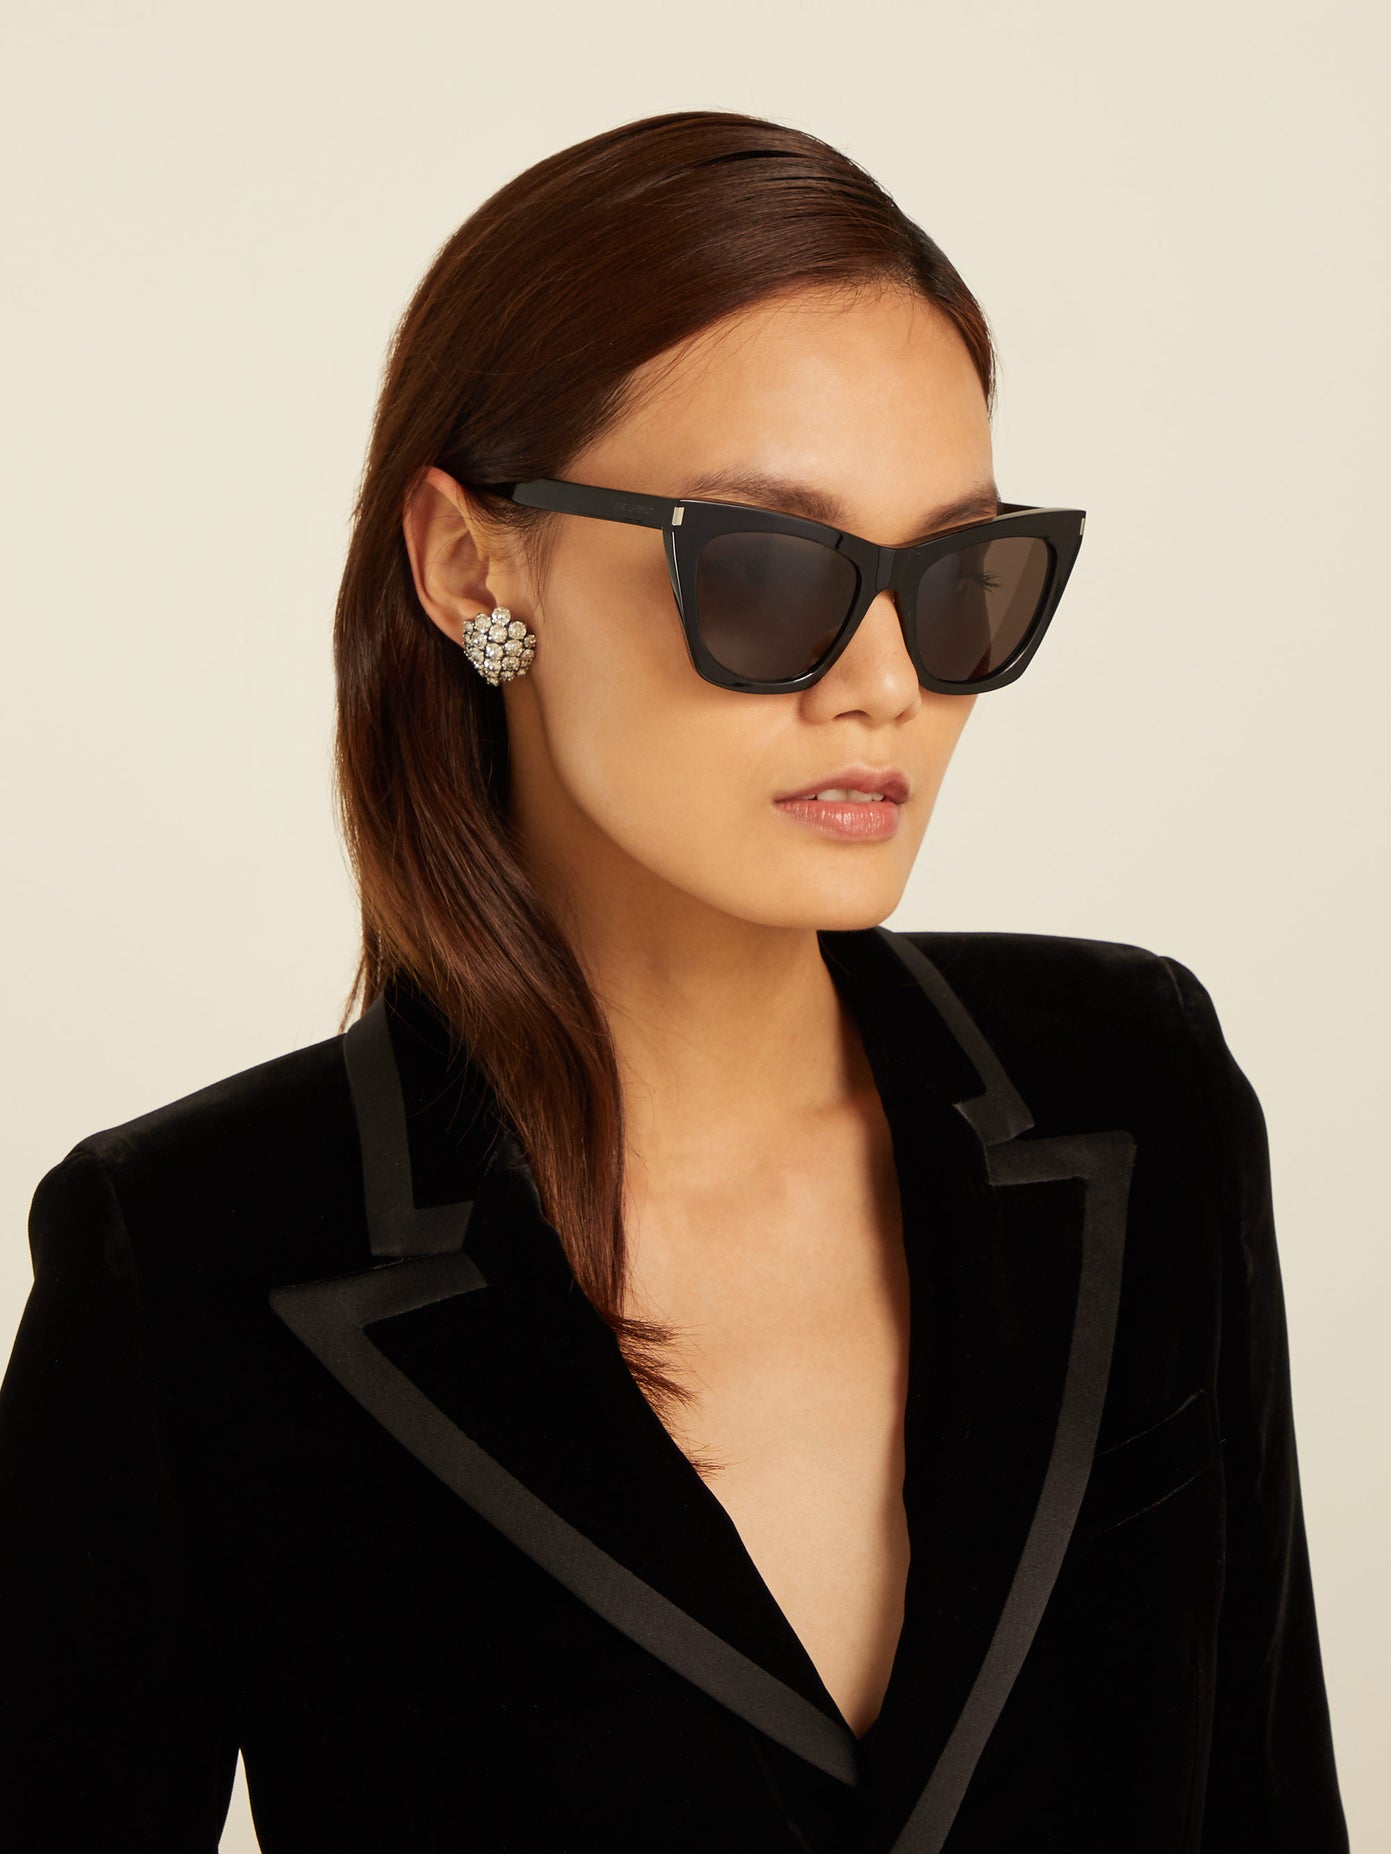 lenshop on X: Saint Laurent's black acetate sunglasses have a cat